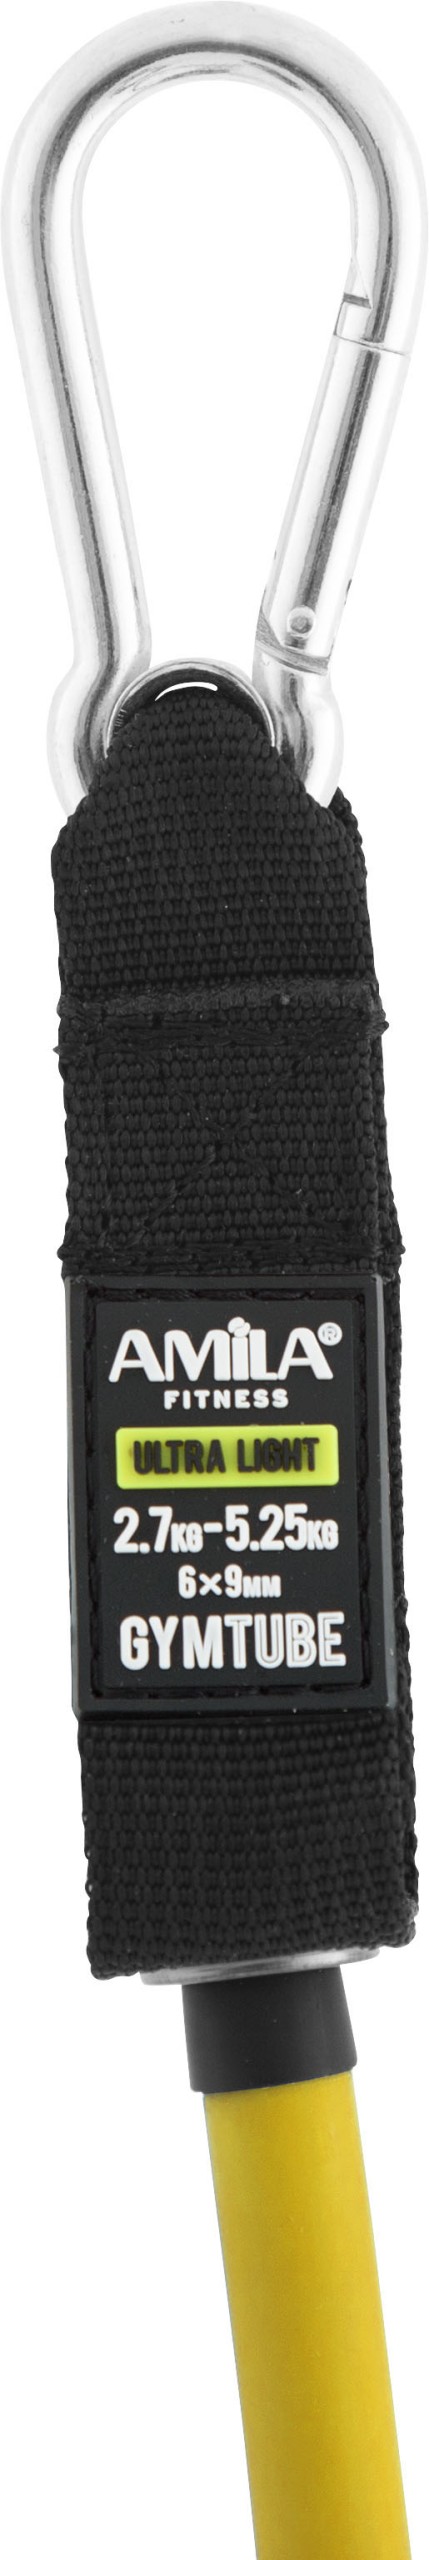 Λάστιχο Αντίστασης AMILA GymTube με Clip Ultra Light